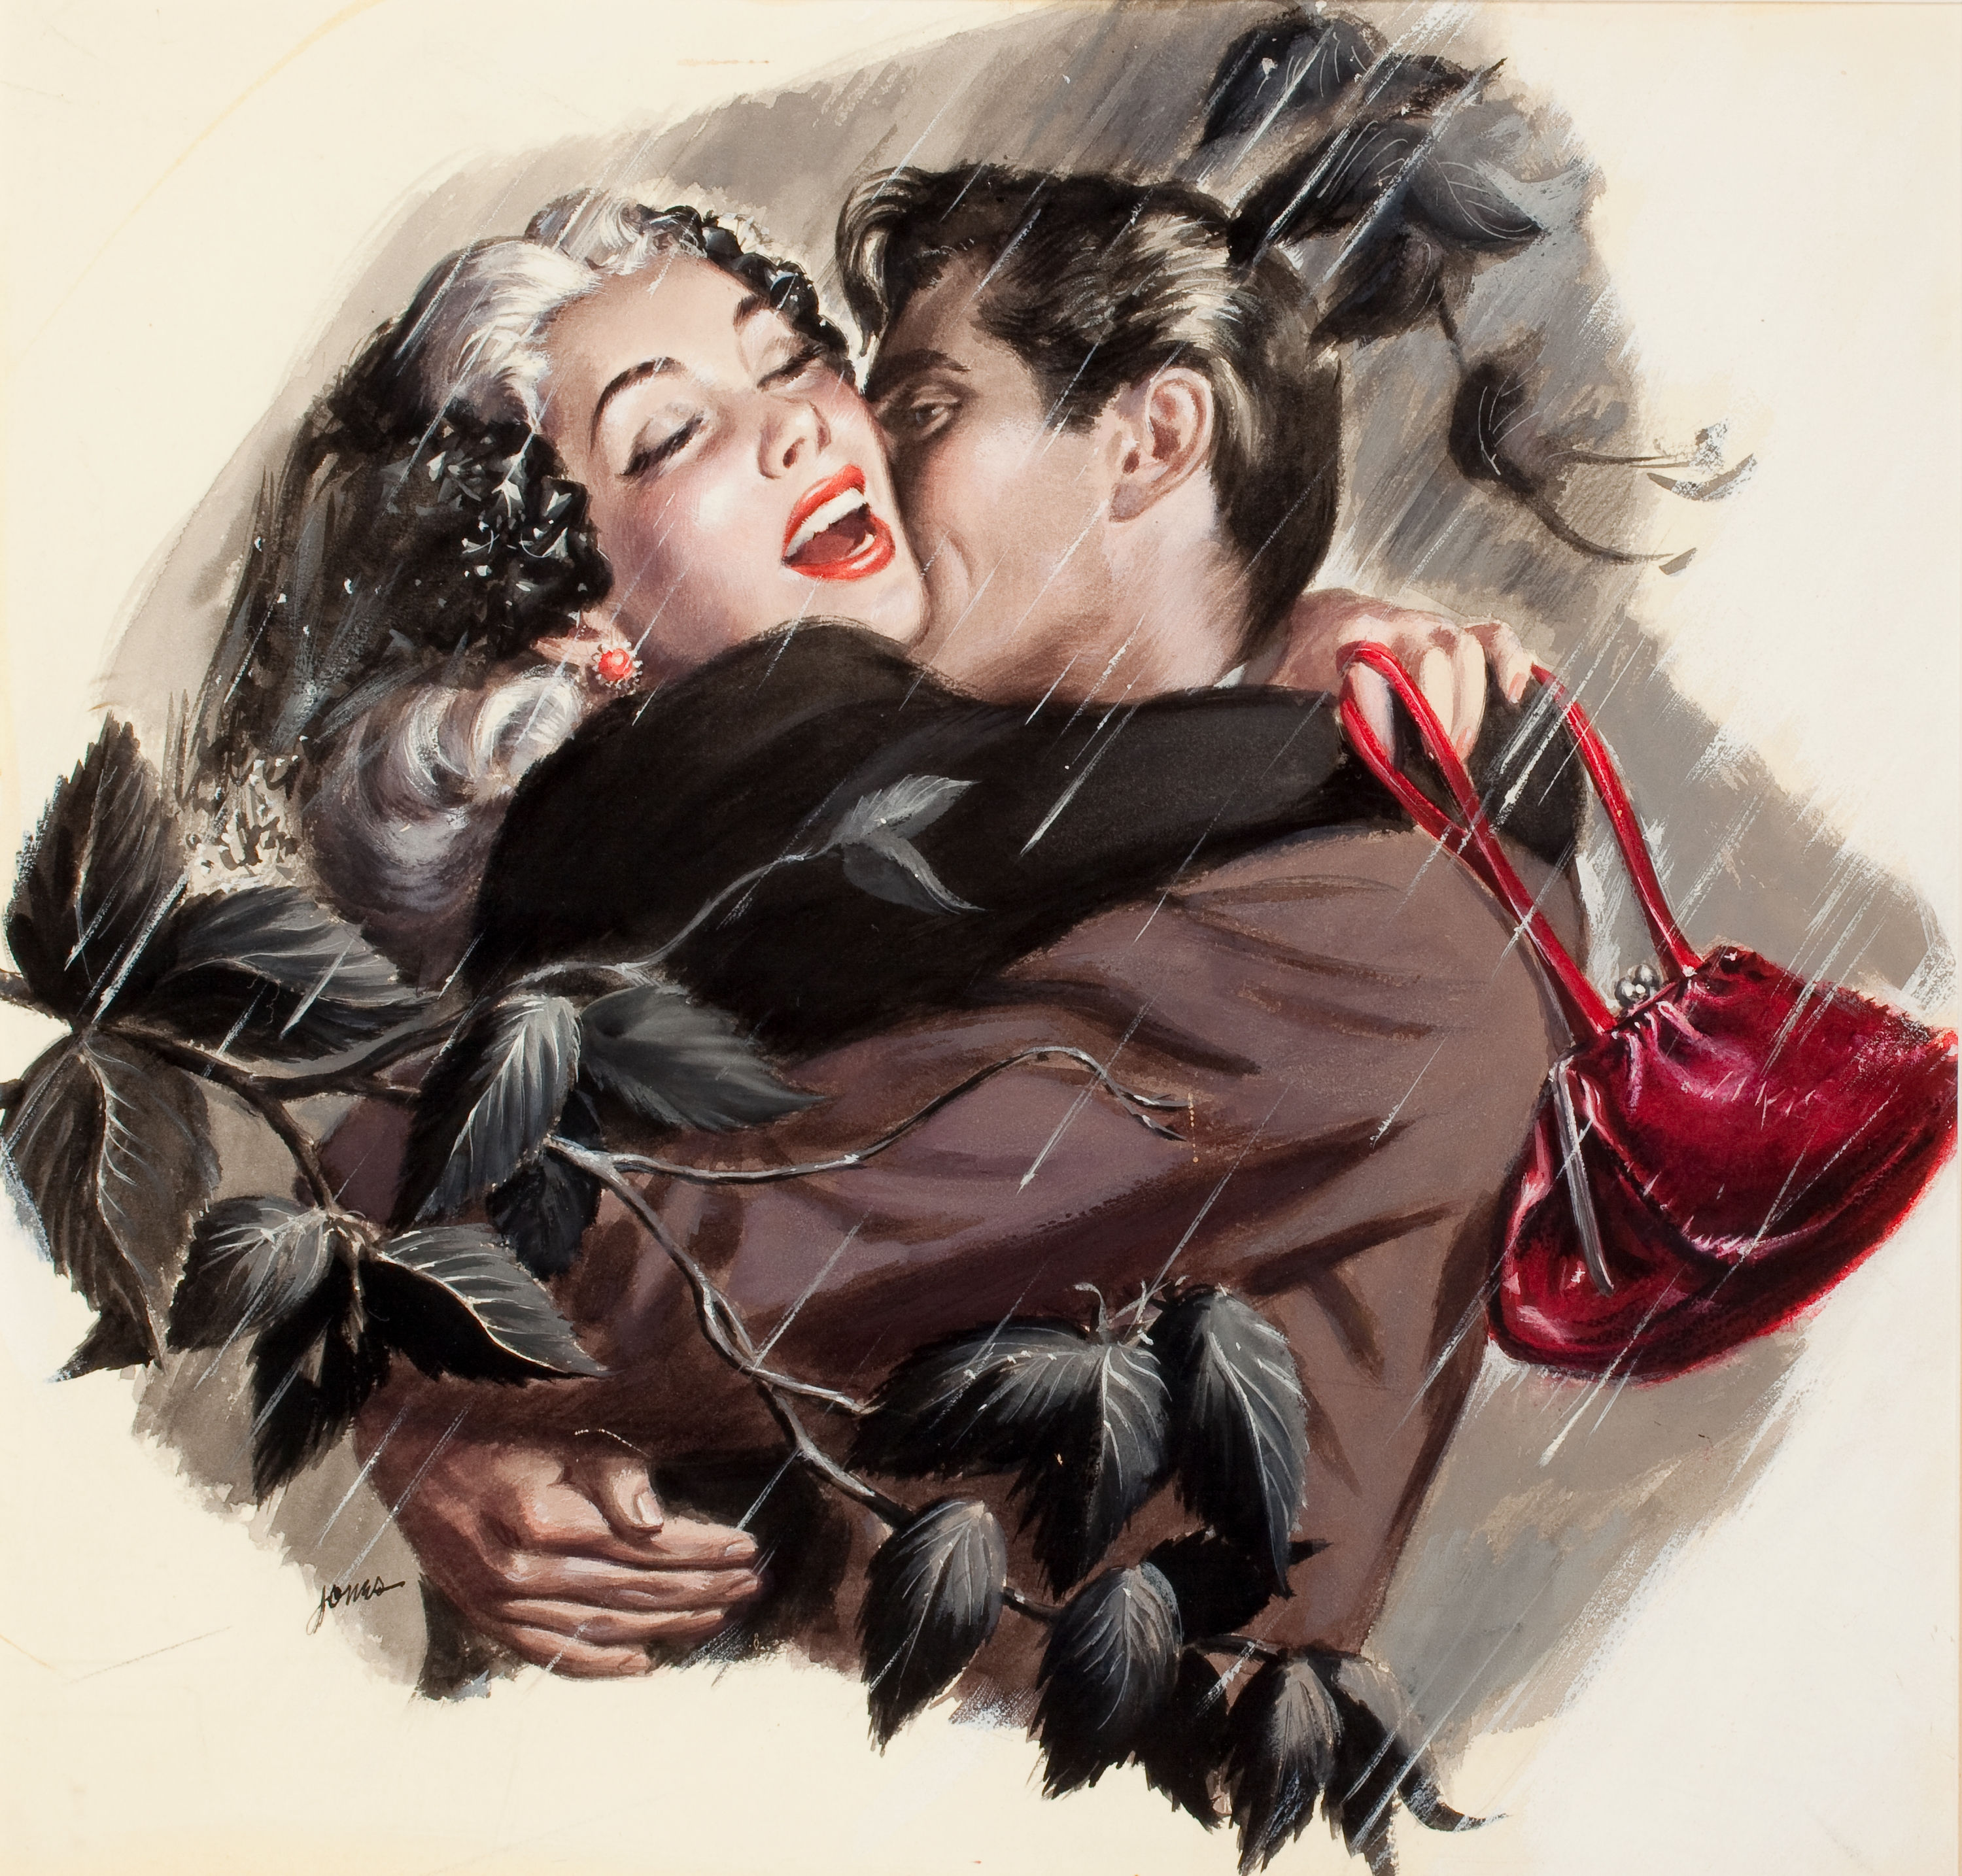 Открытки парень с девушкой. Ретро открытки любовные. Картина с поцелуйчиками. Красивые открытки мужчина и женщина. Красивые романтичные открытки.